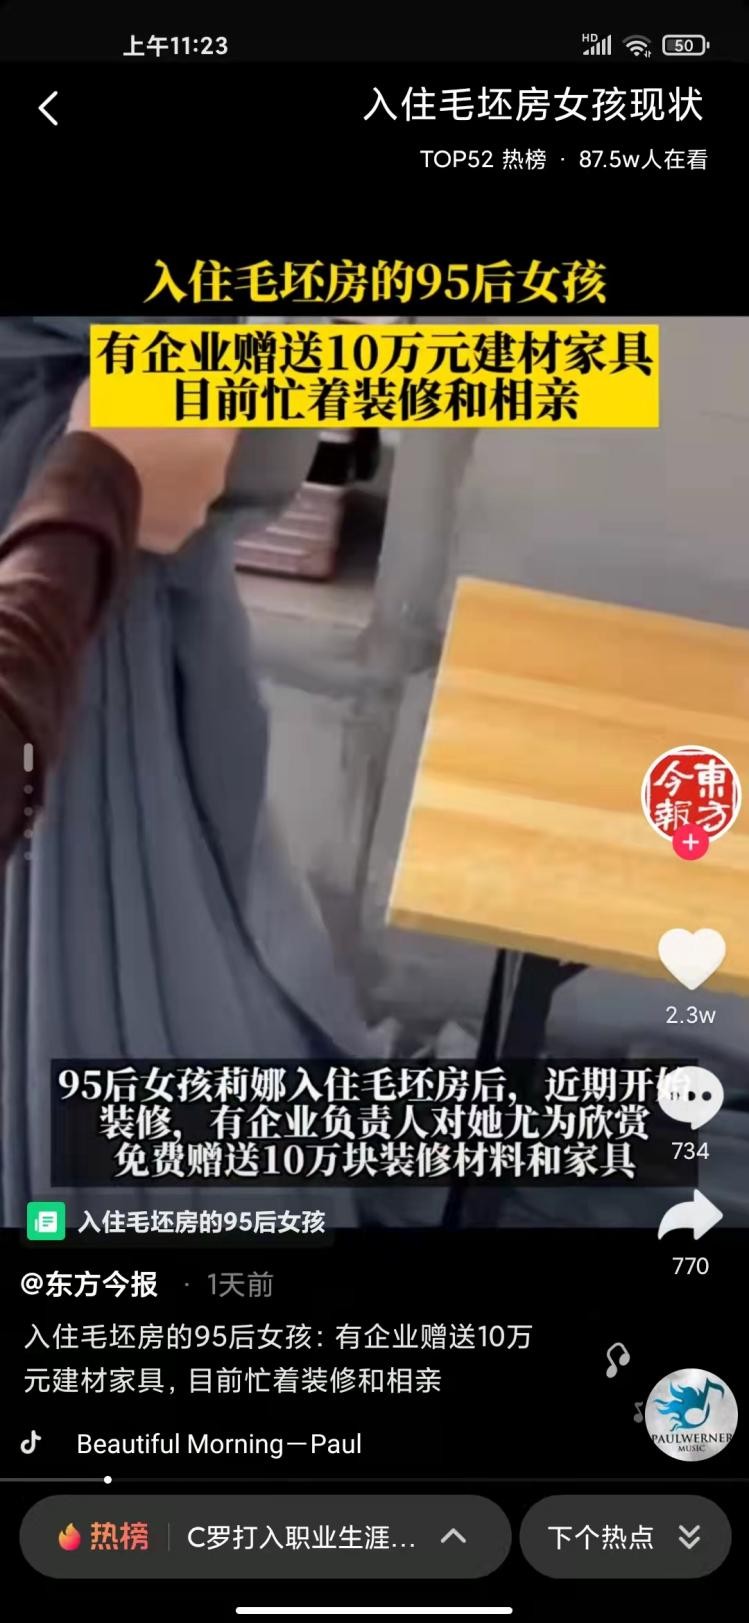 入住毛坯房95后女孩获赠全屋家装，爱心企业鸿鹄中国显温暖